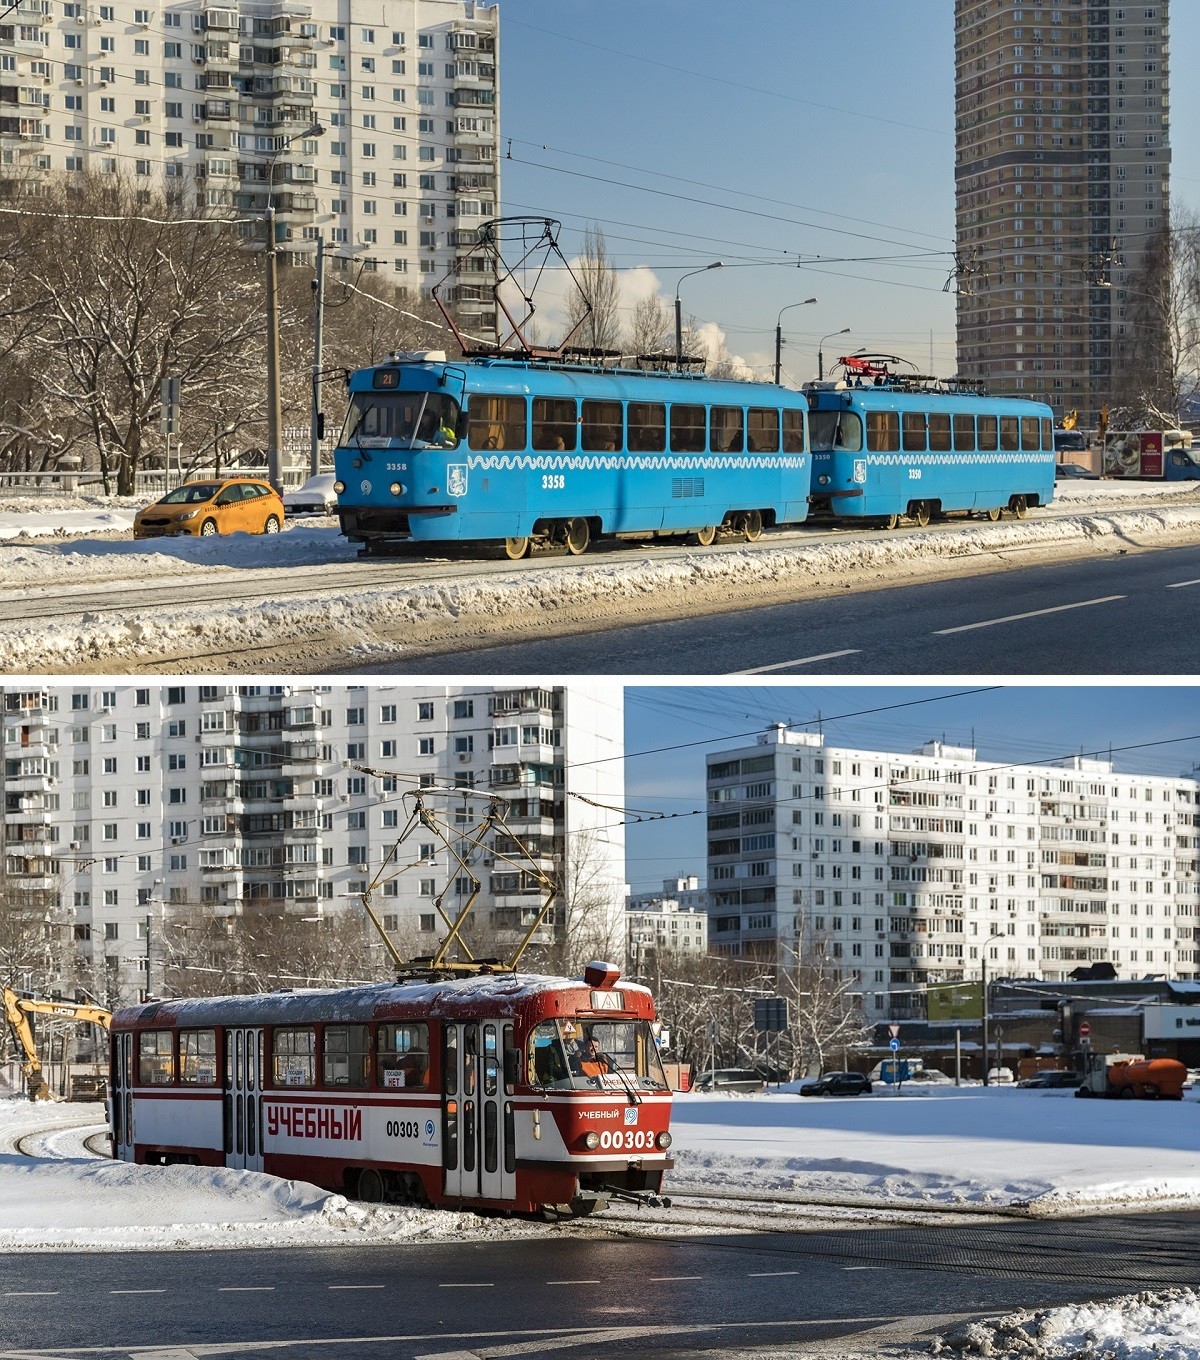 Ejemplos de tranvías utilizados anteriormente en Moscú
